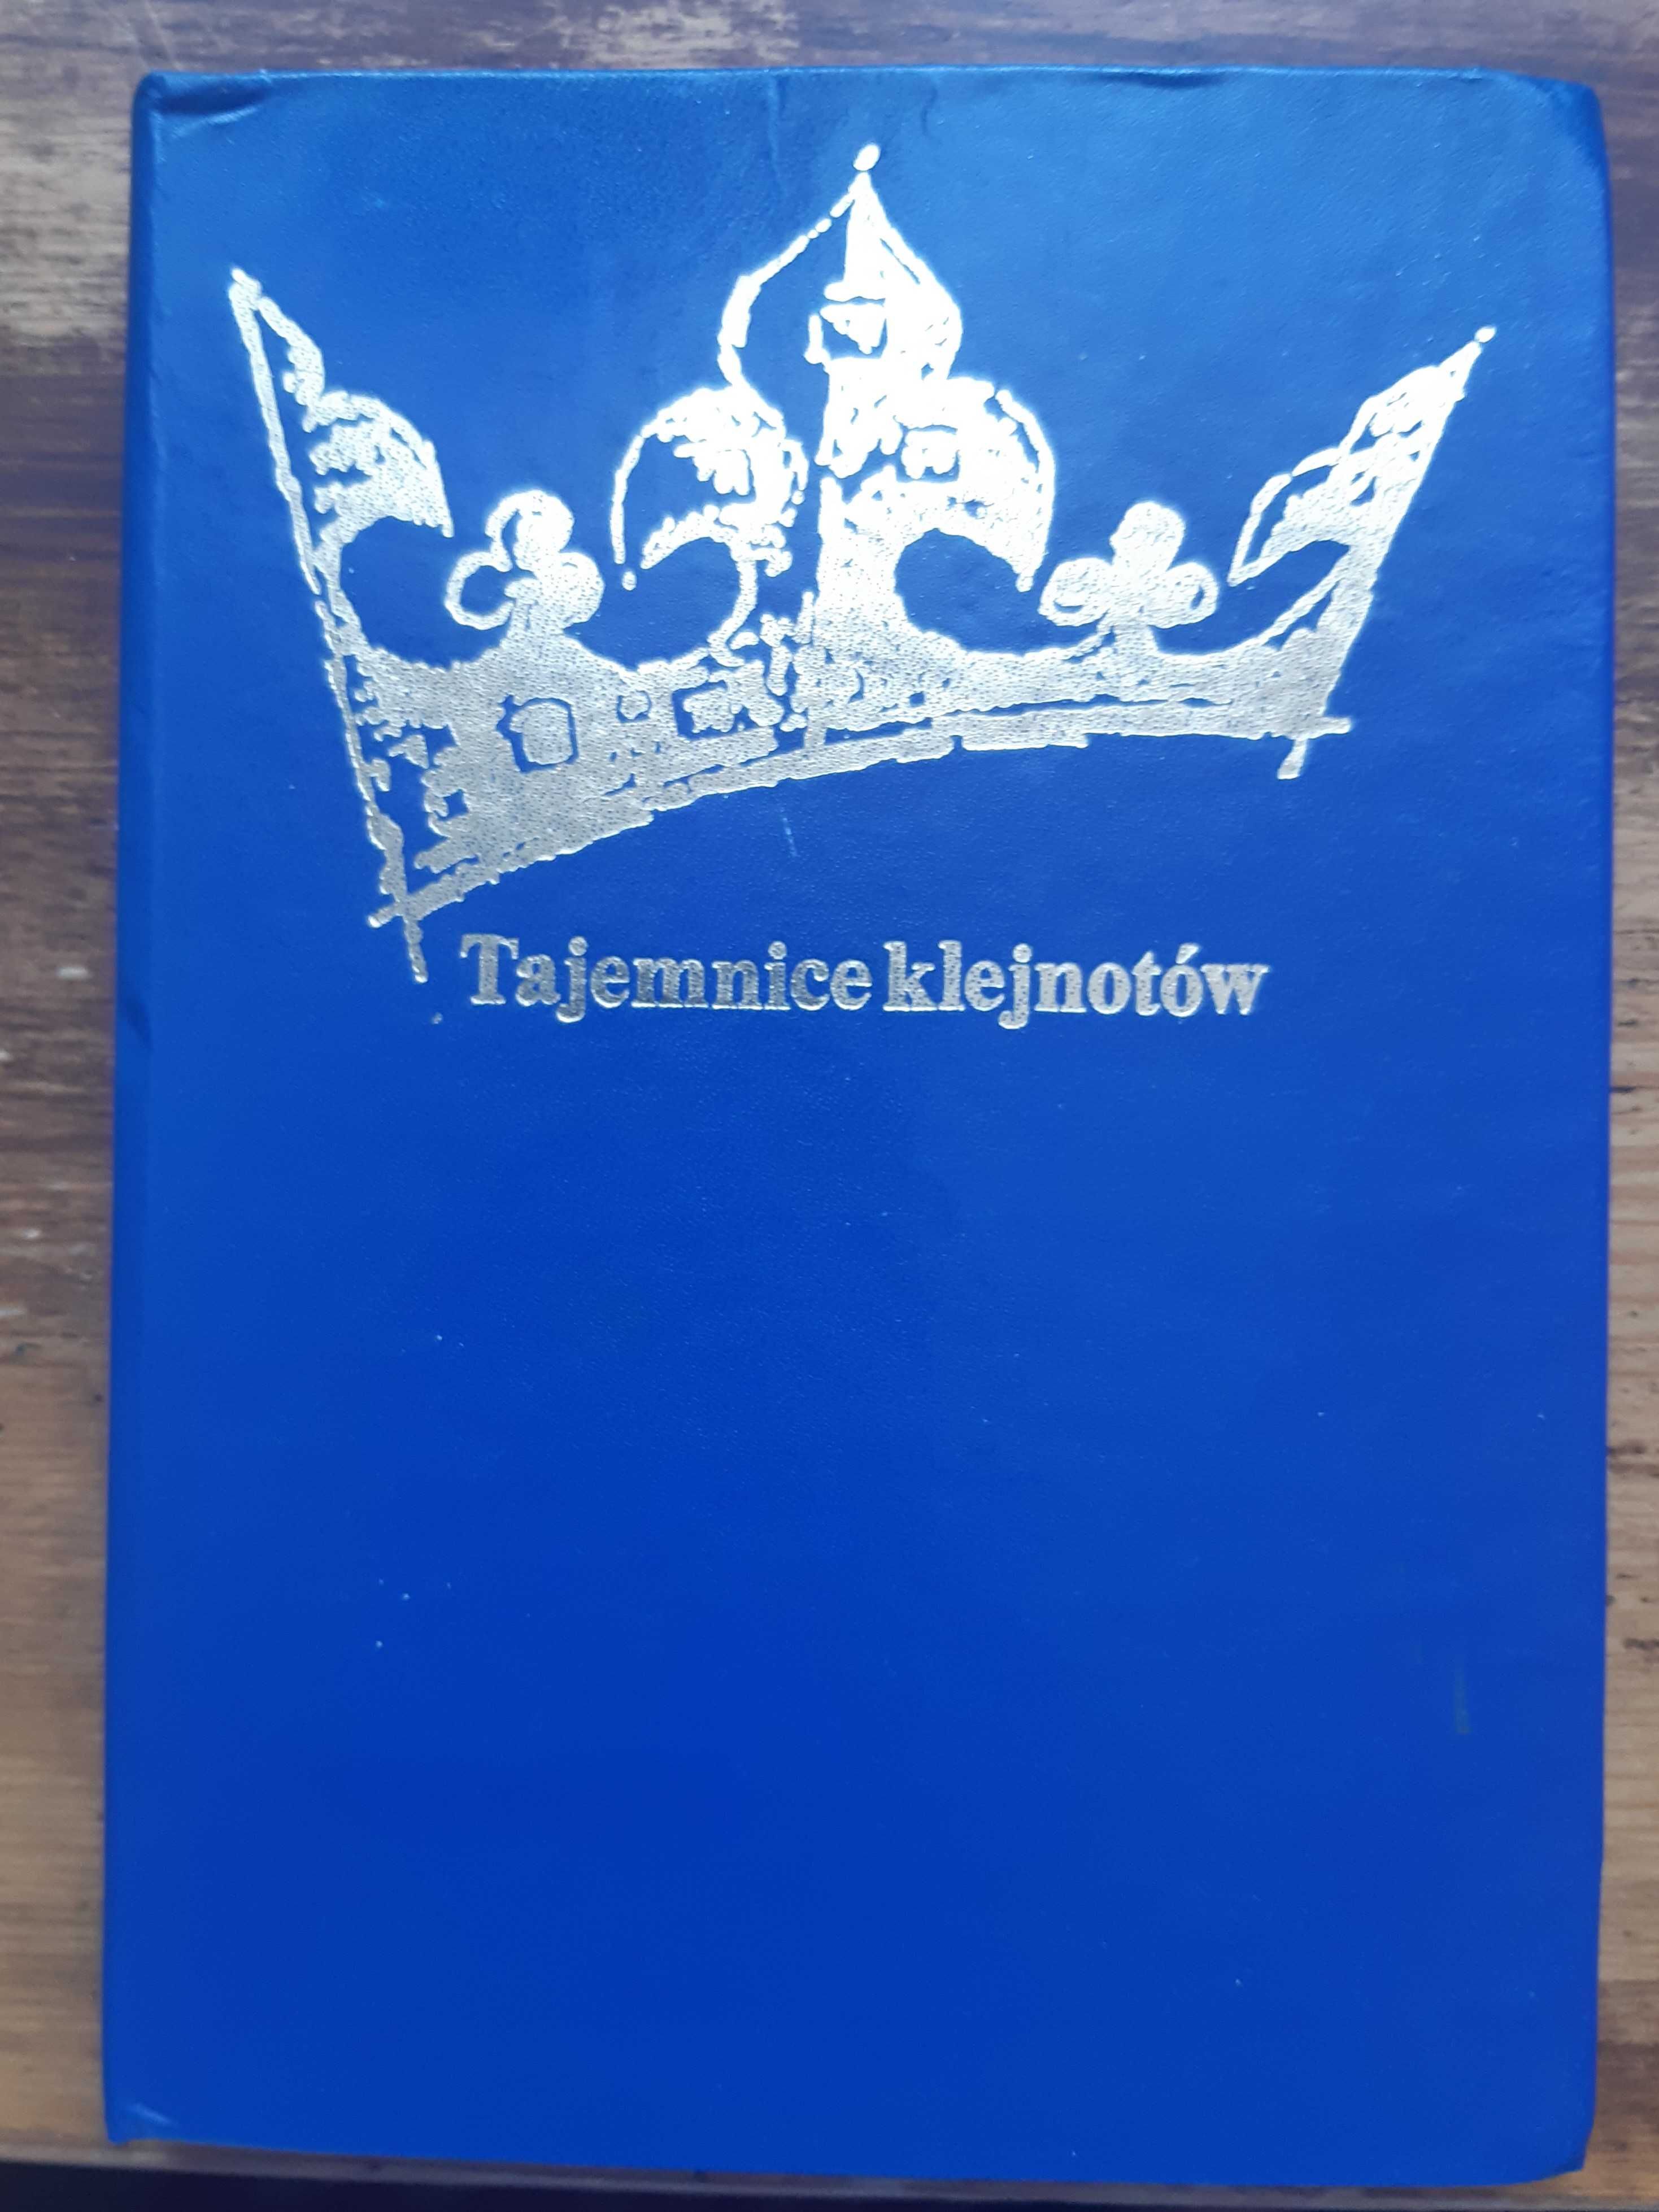 Bożena i Róża Krzywobłocka. "Tajemnice klejnotów". Wydanie z 1983